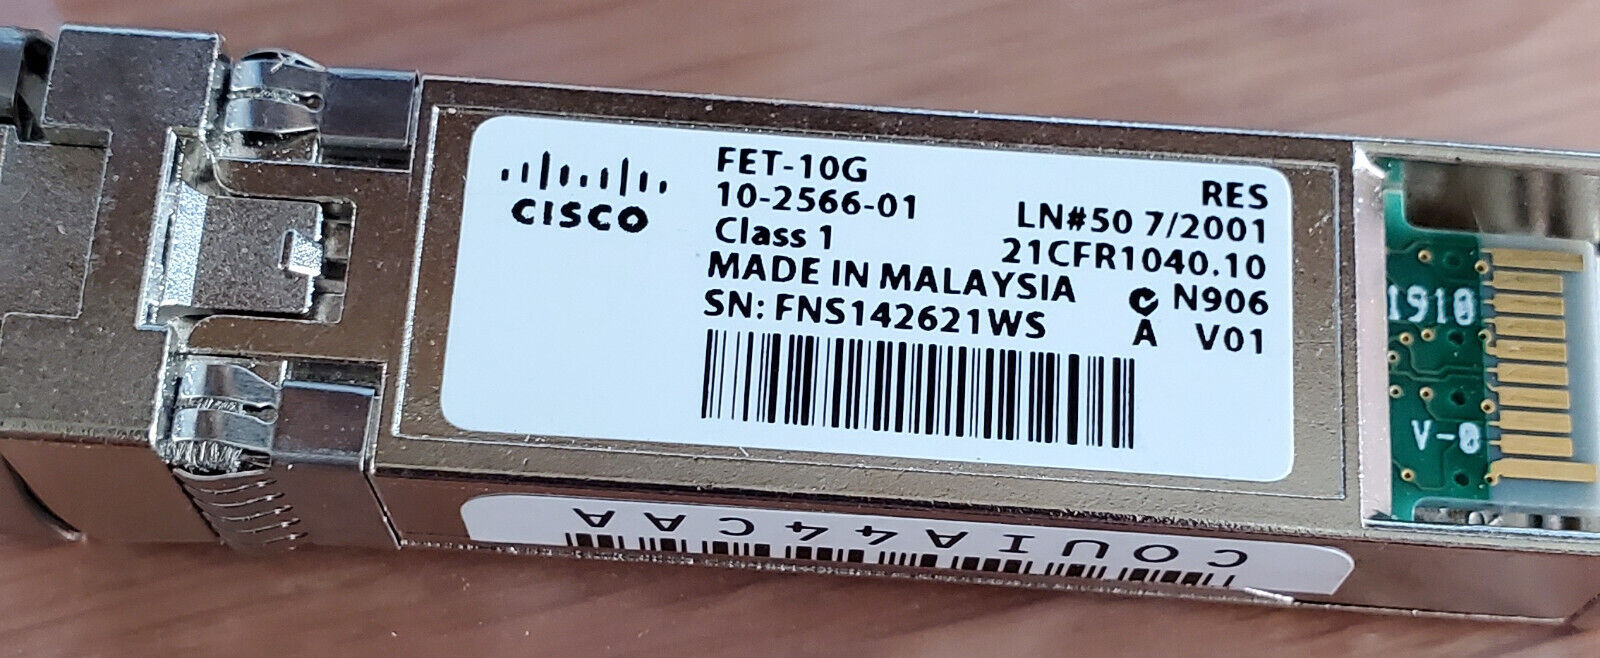 Lot of 22 Genuine Cisco SFPs FET-10G, GLC-SX-MM COM 